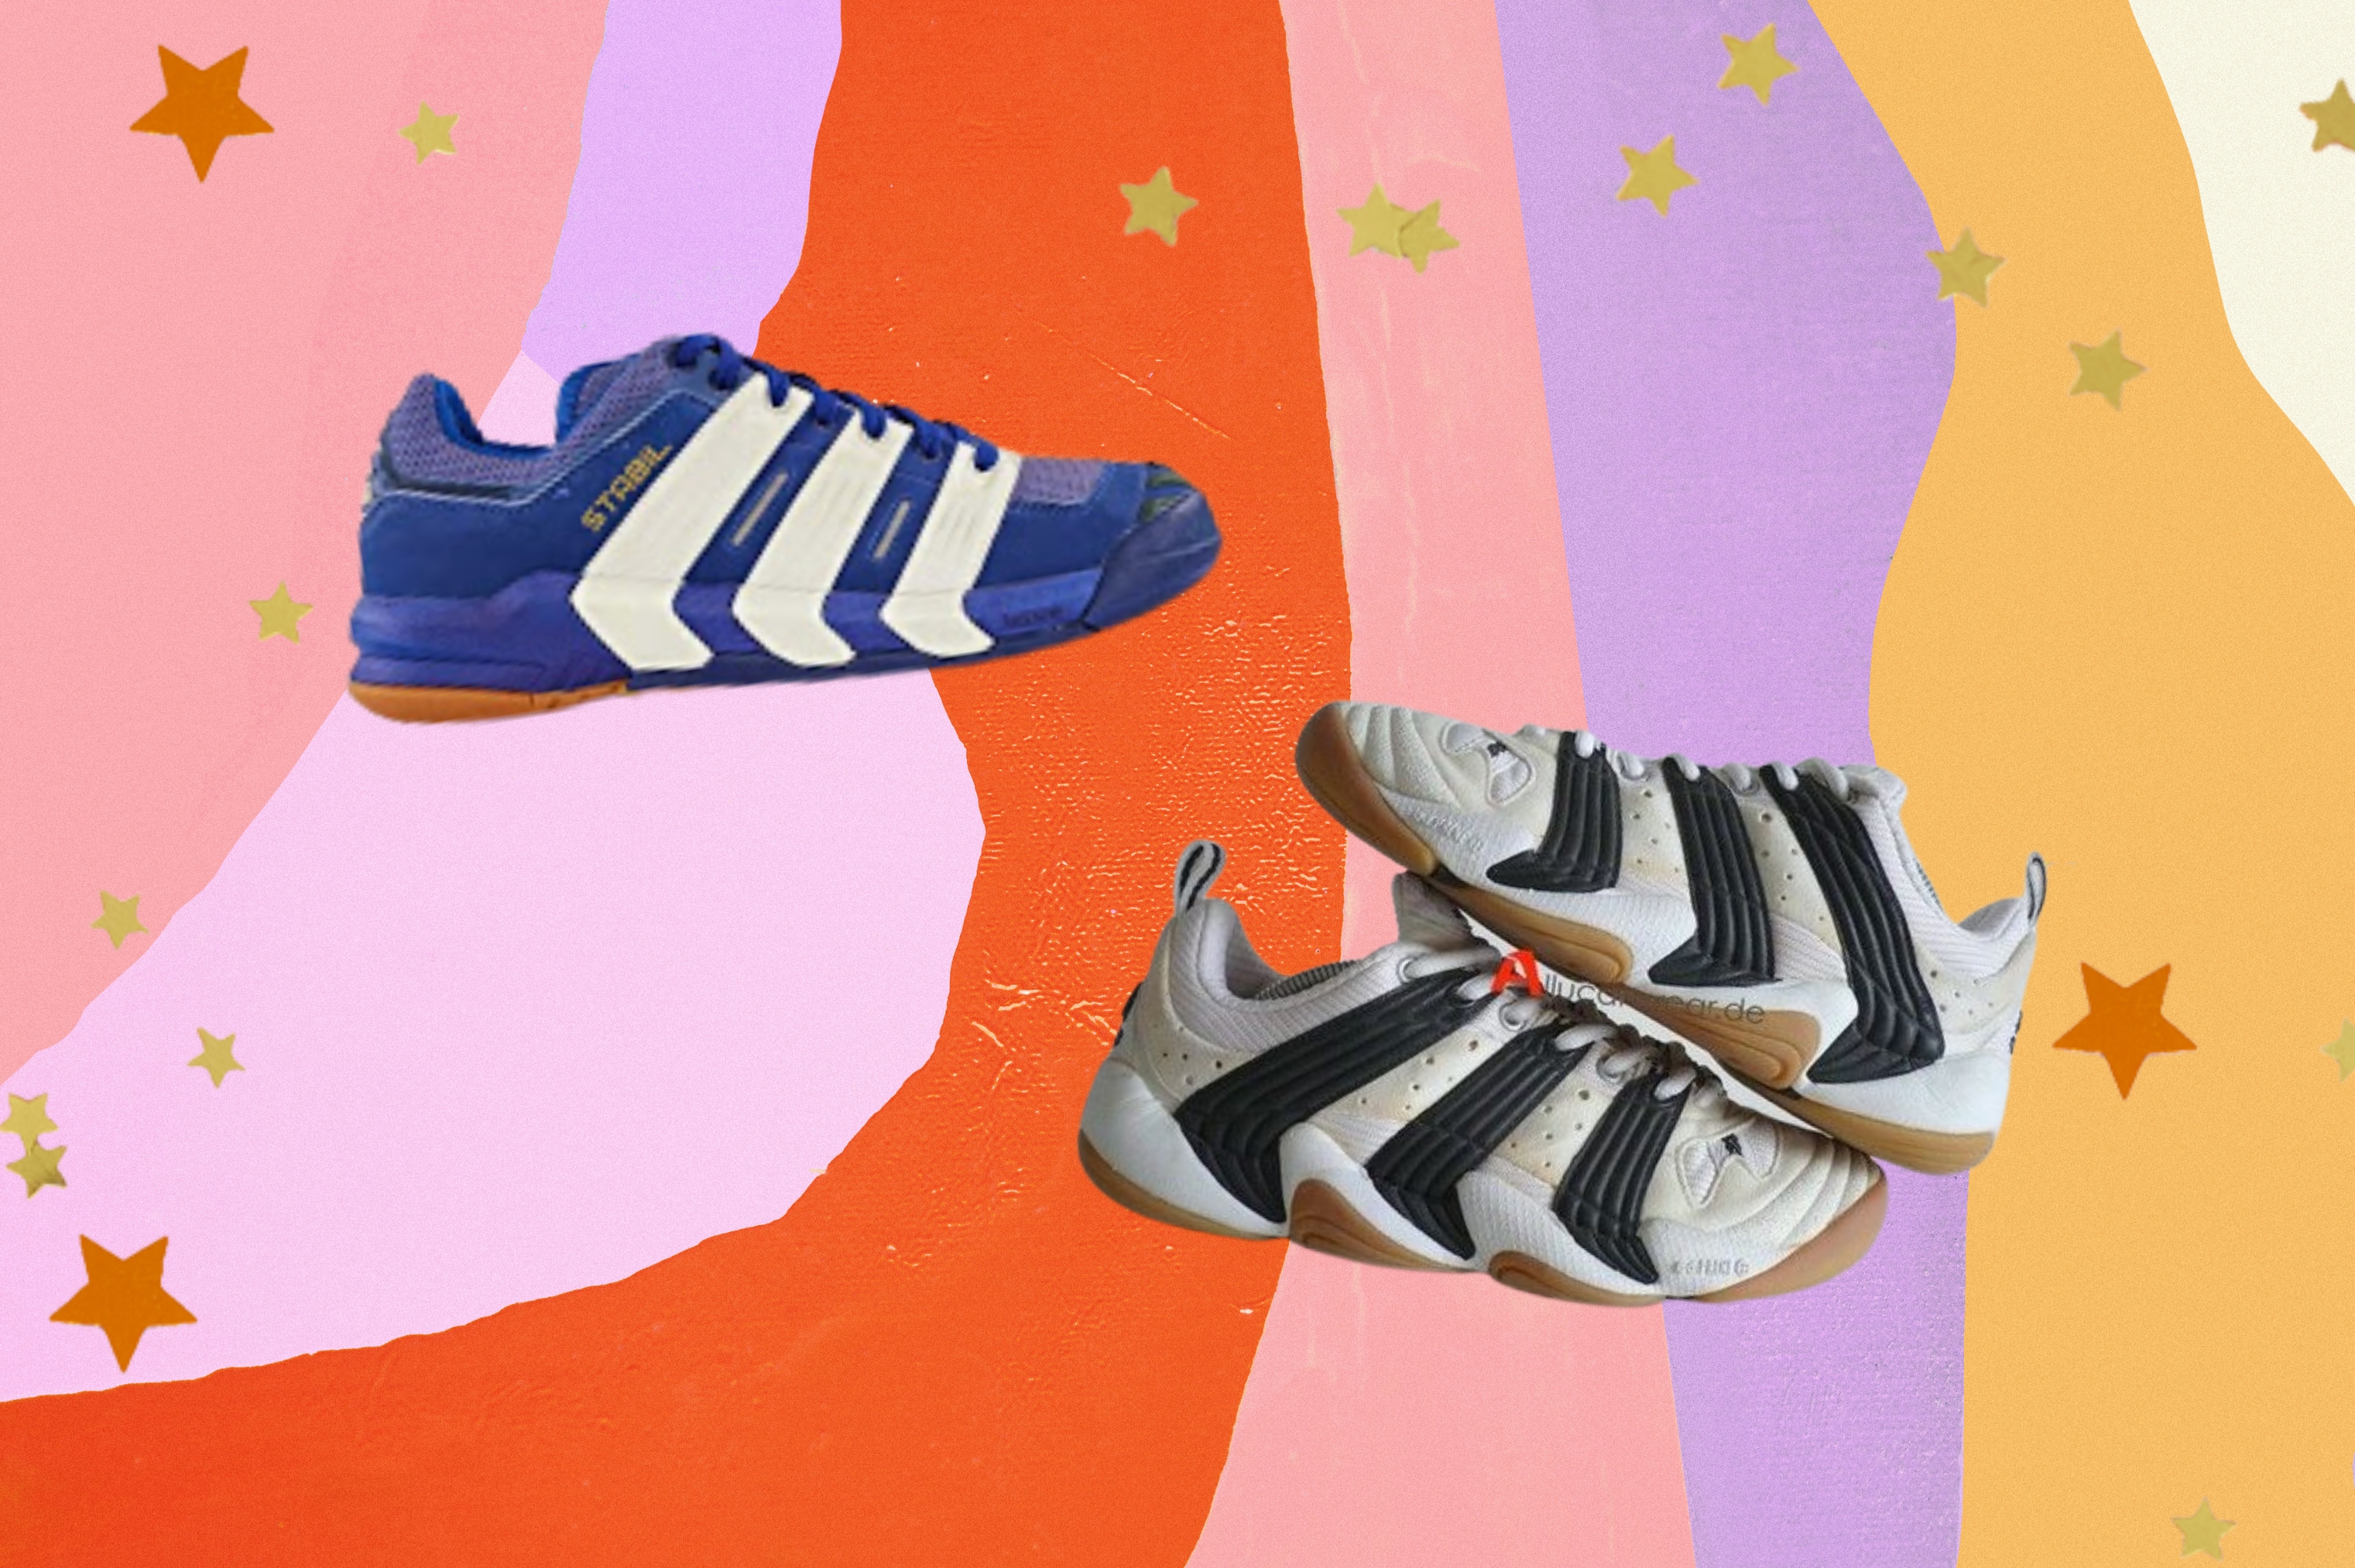 Montagem com o fundo colorido e detalhe de estrelas nas bordas com a foto de dois tênis no centro do modelo Adidas Stabil anos 2000.